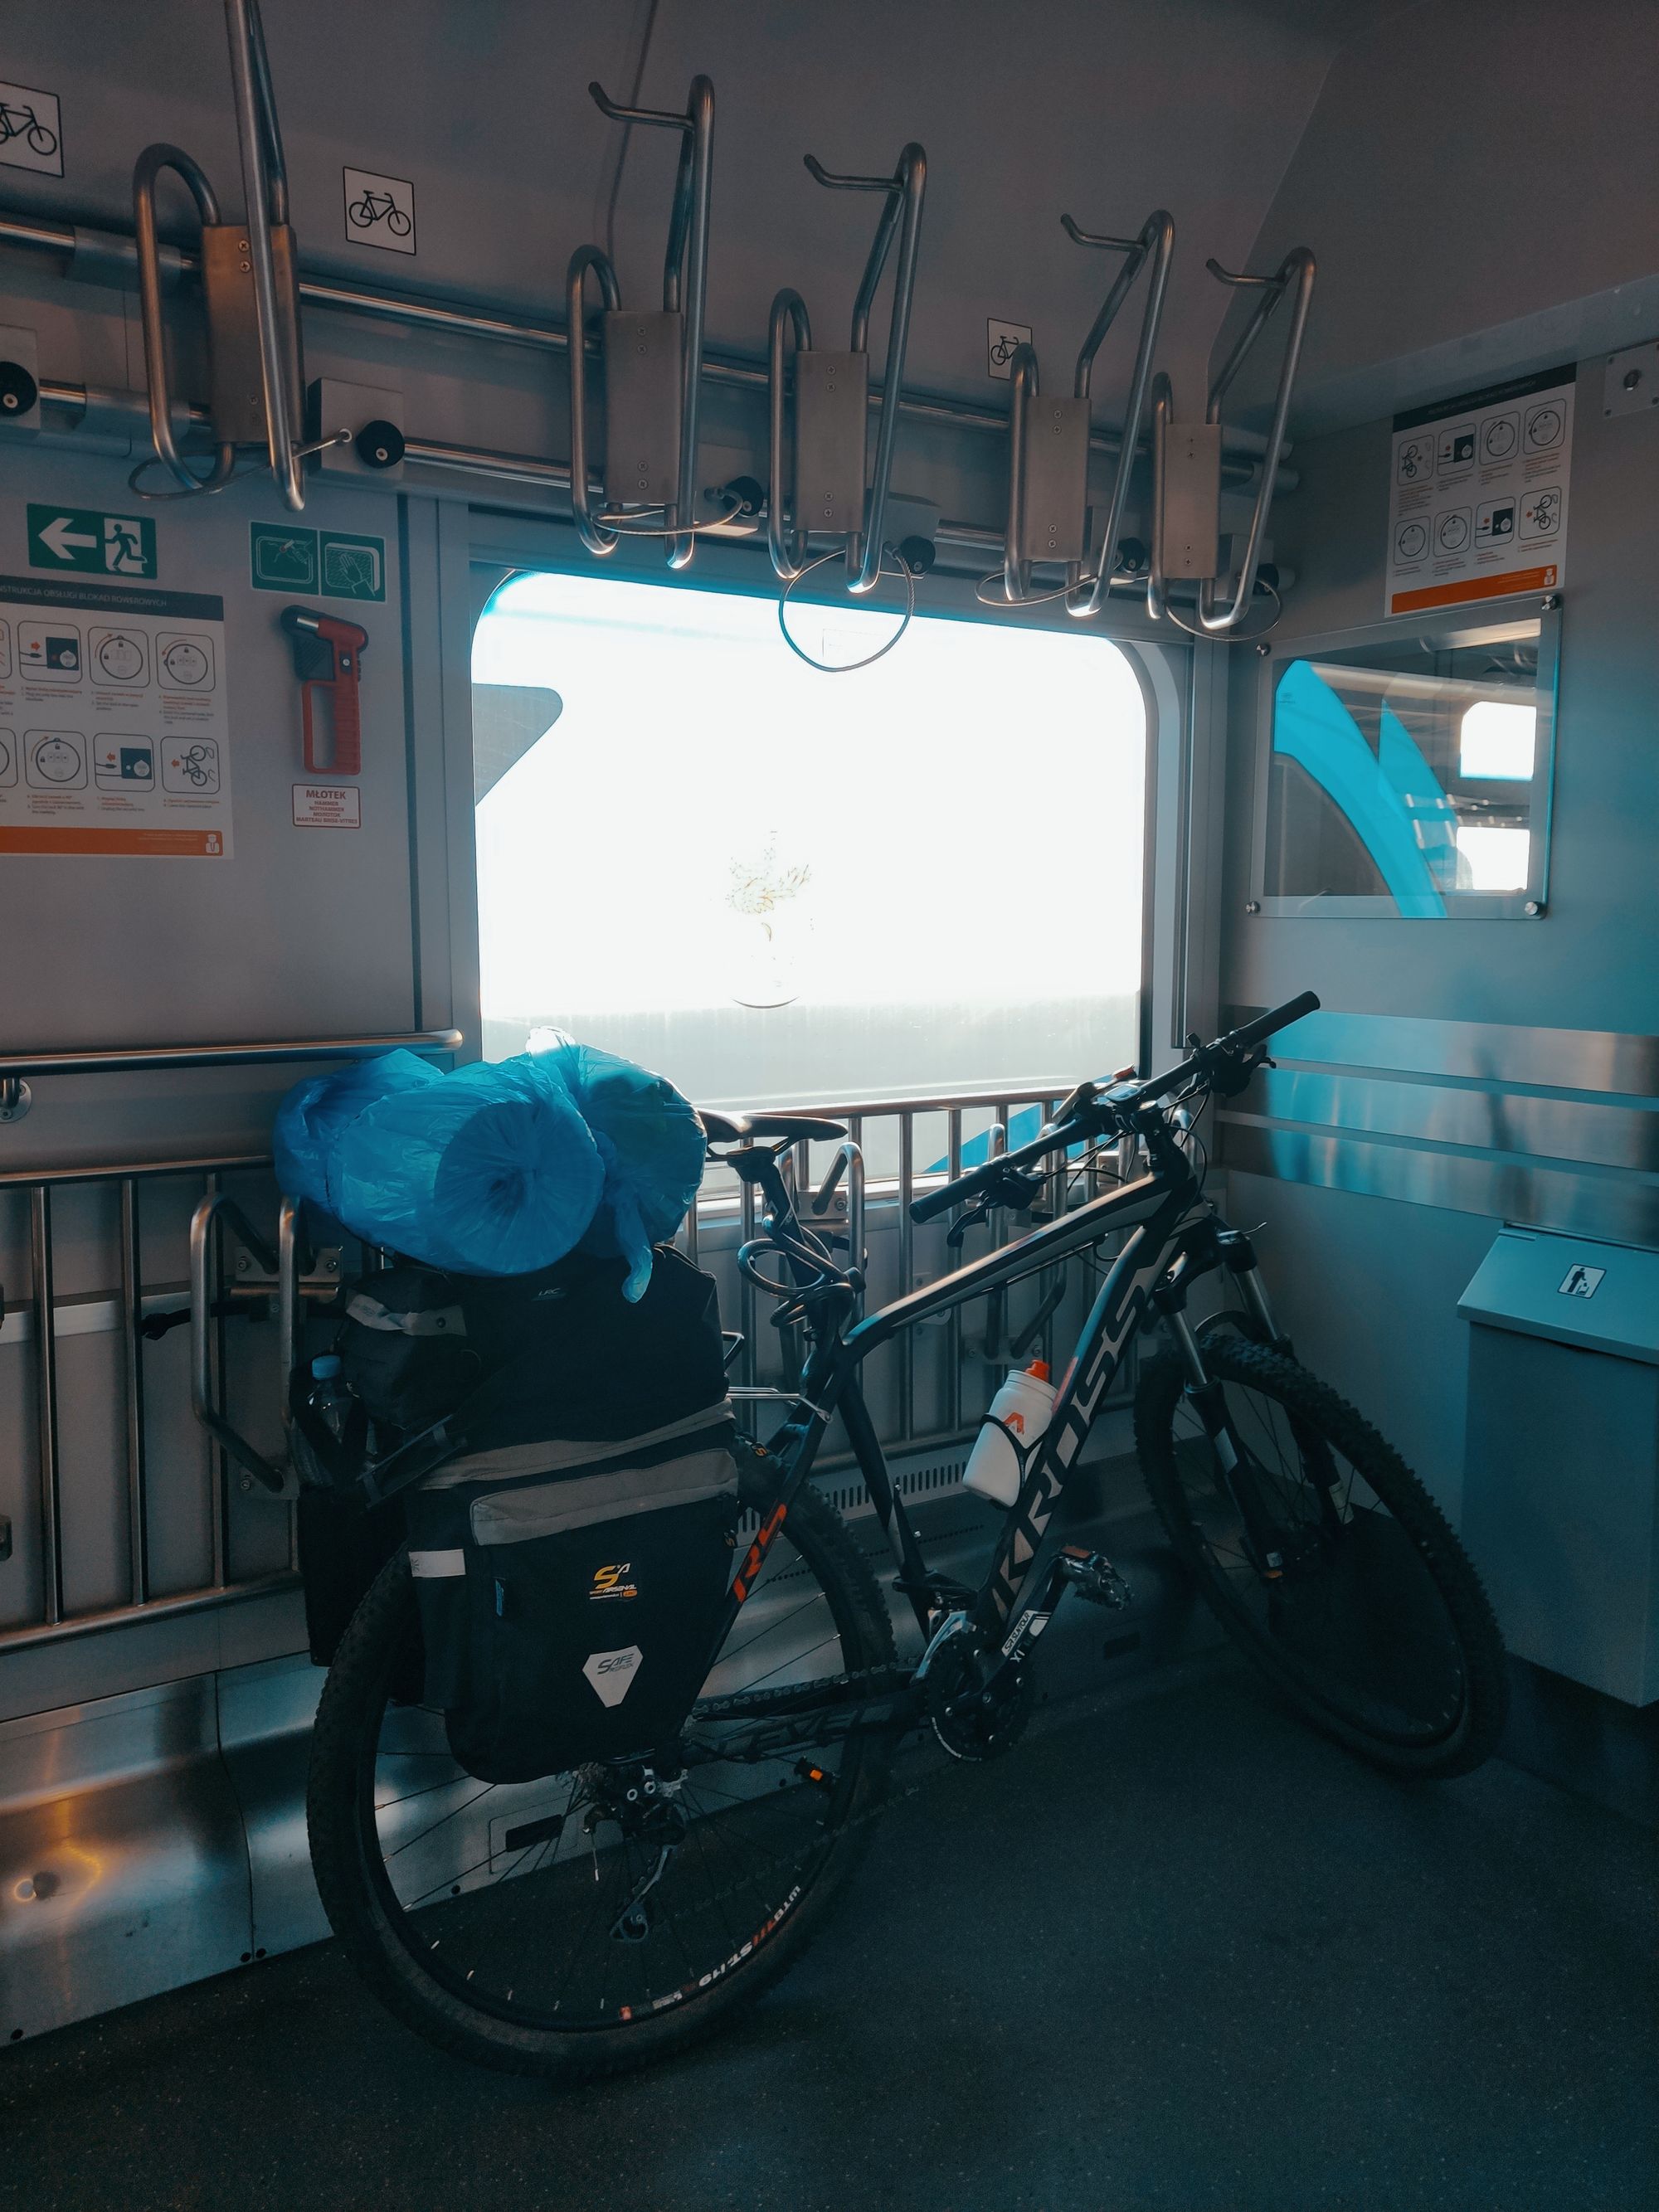 Miejsce dla rowerów w wagonie PKP Intercity. Formalnie należy zawiesić rower na wieszaku